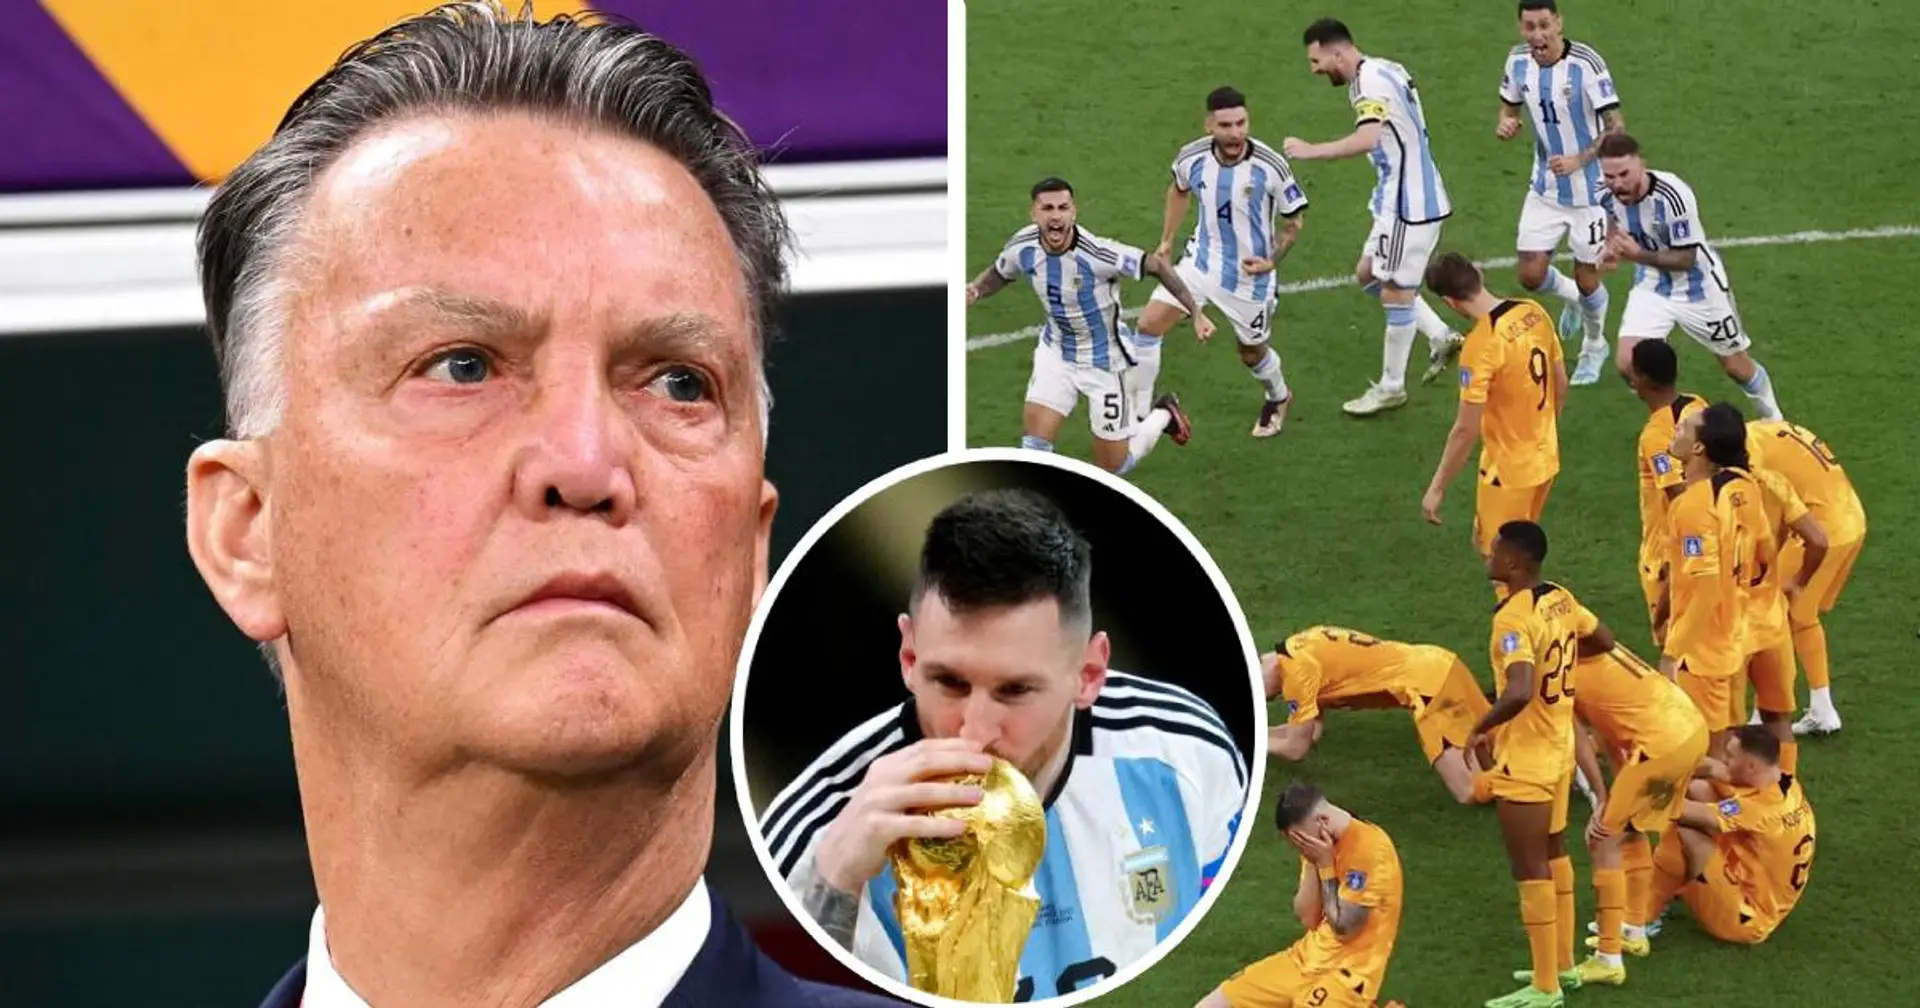 "Messi devait devenir champion du monde" : Van Gaal affirme que la défaite des Pays-Bas contre l'Argentine était truquée